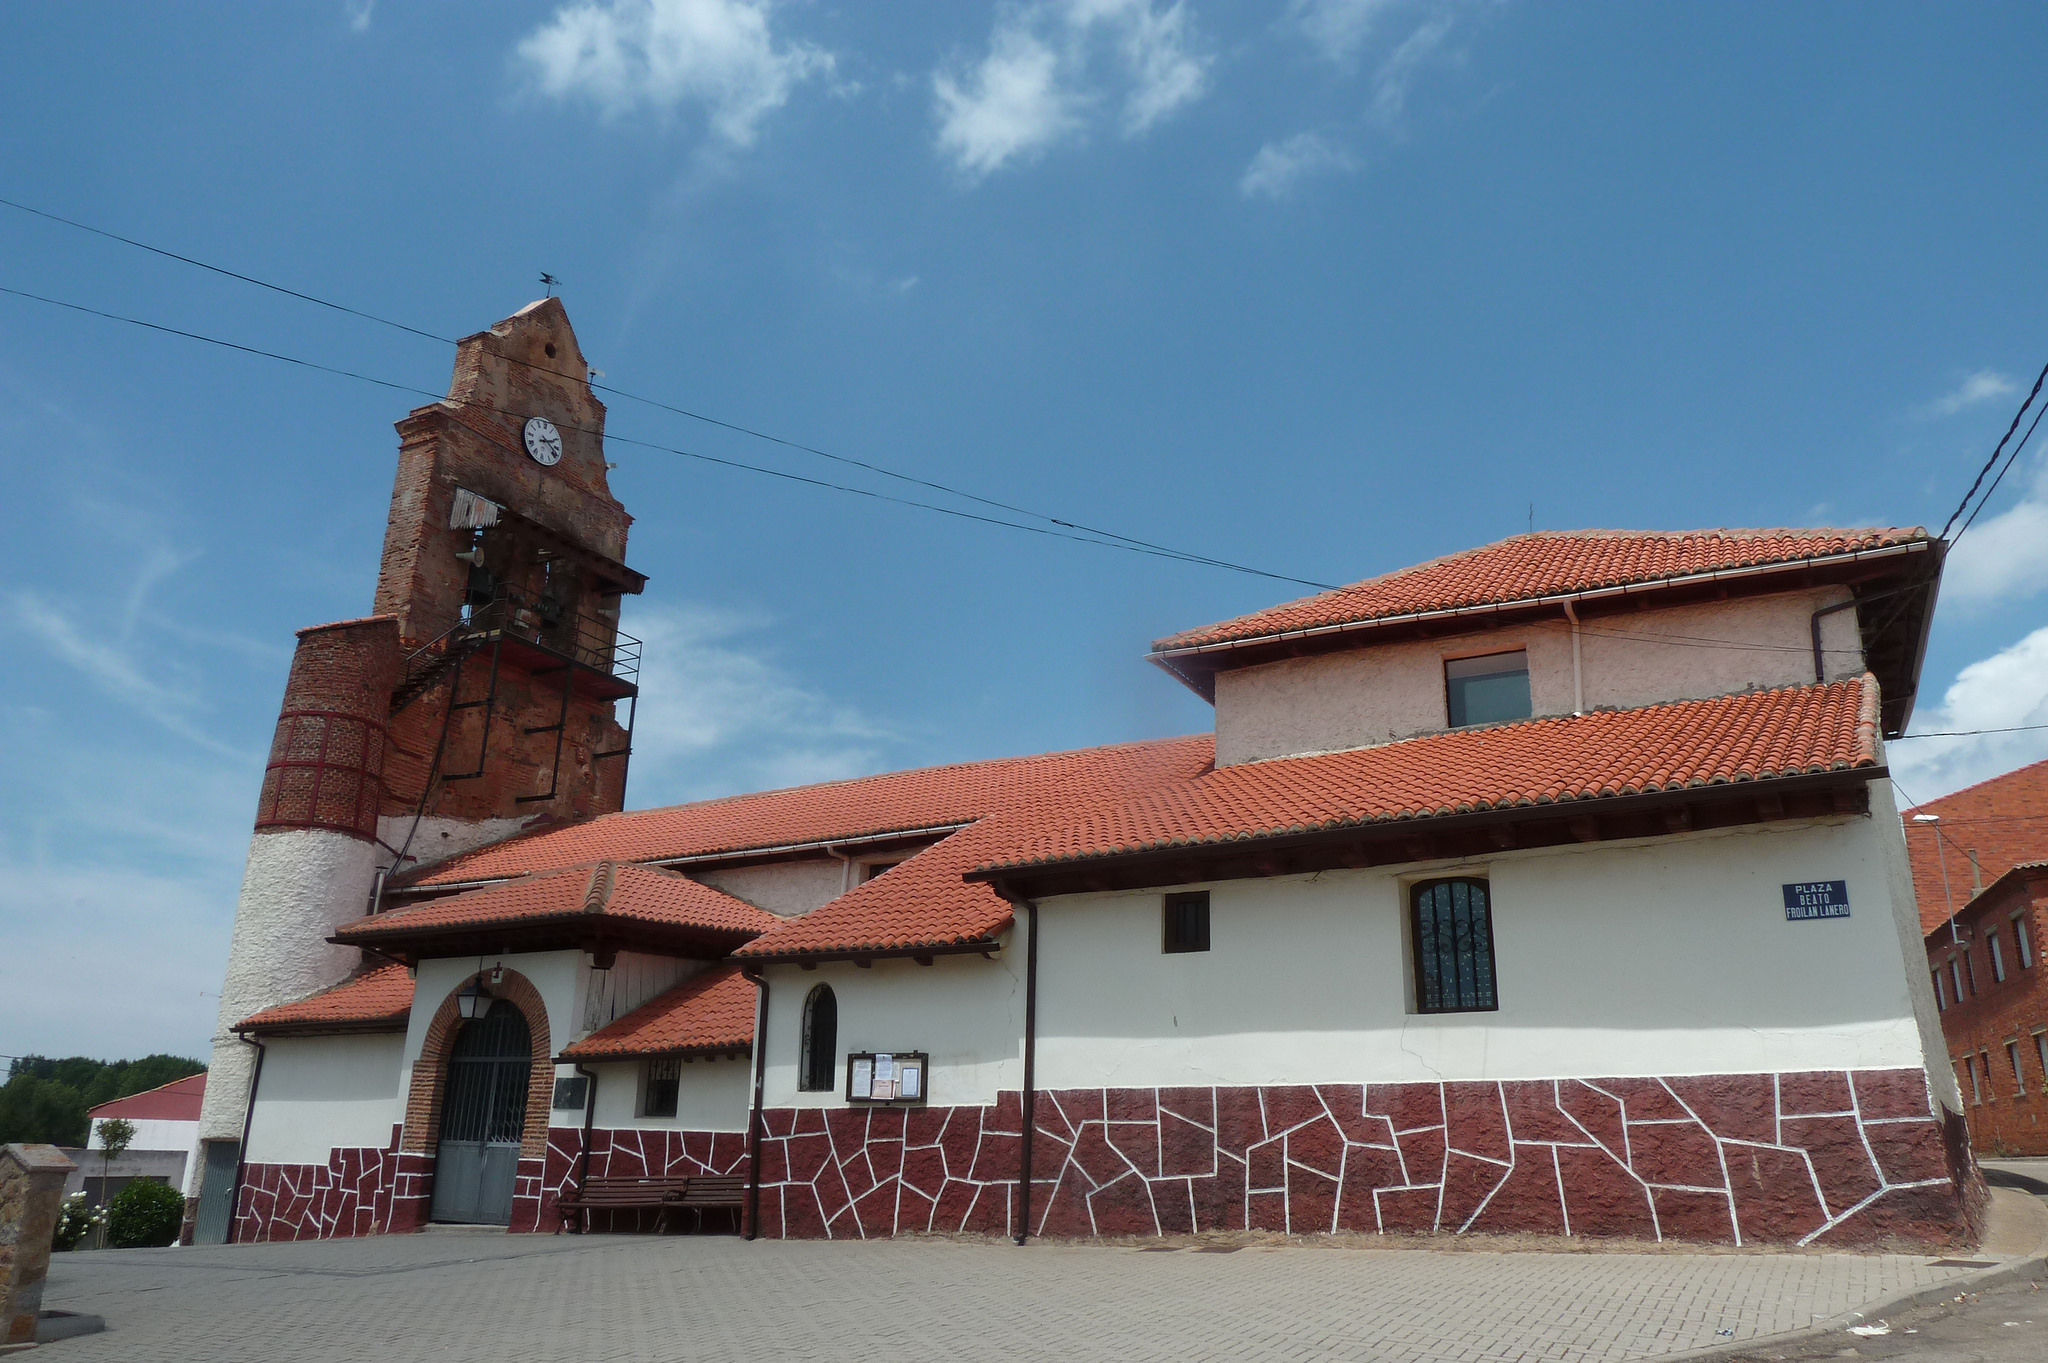 The Church of Villadangos del Páramo